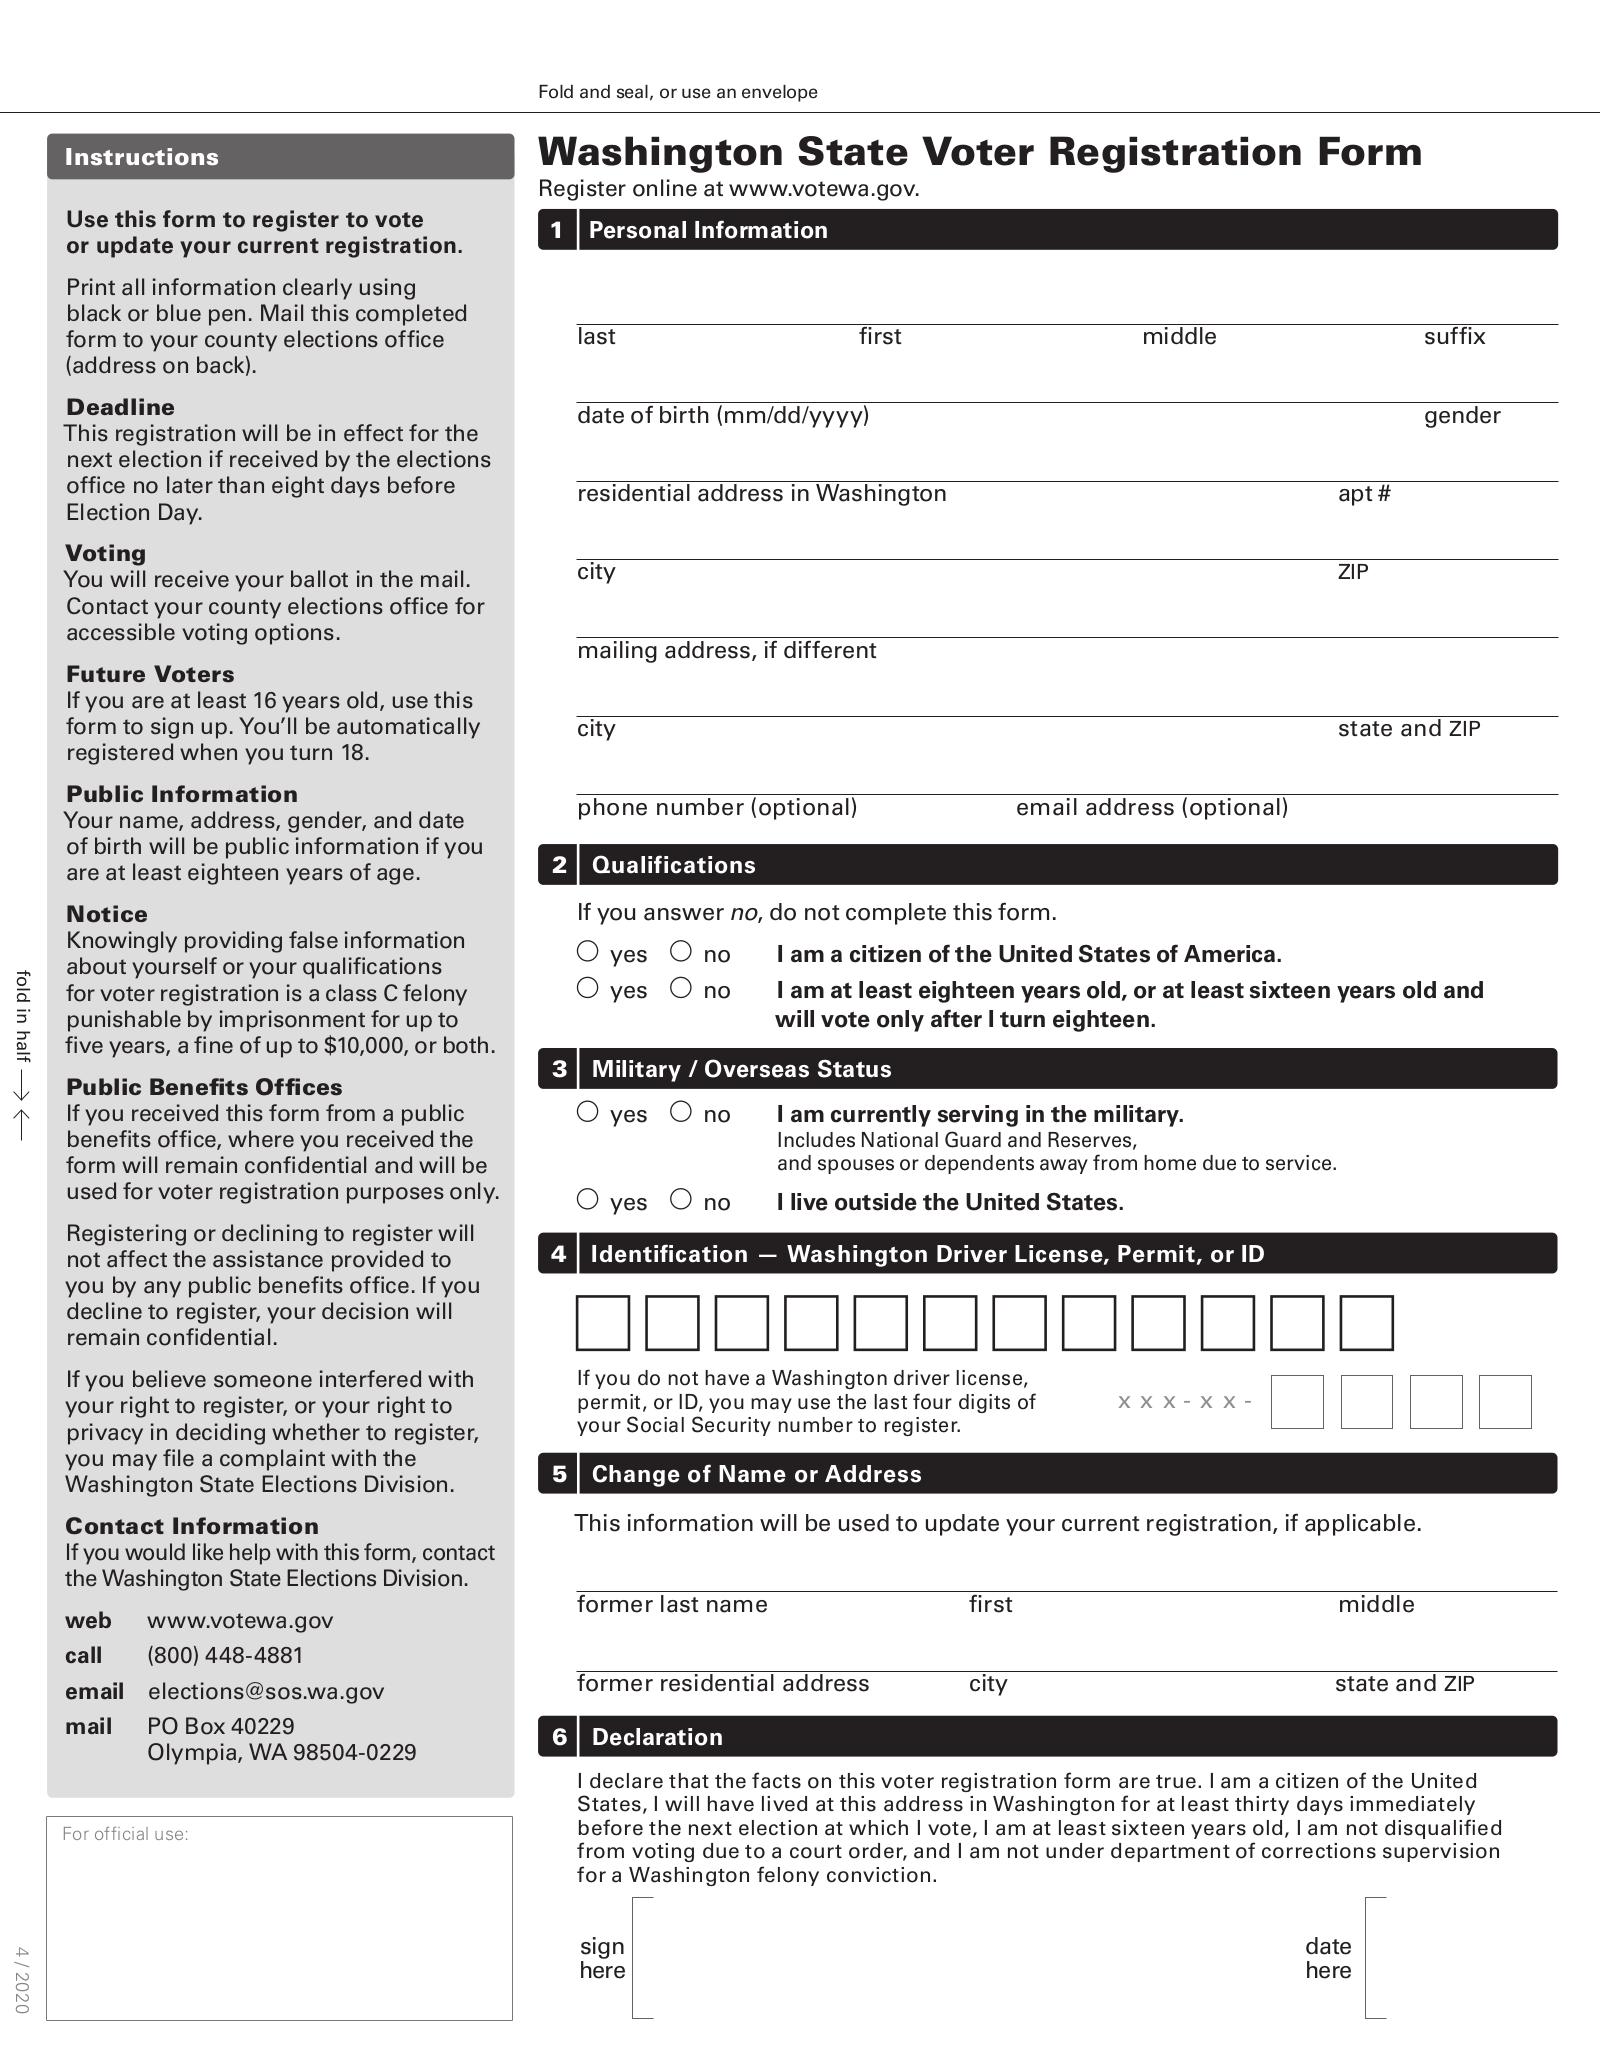 Washington Voter Registration Form – Register to Vote in WA